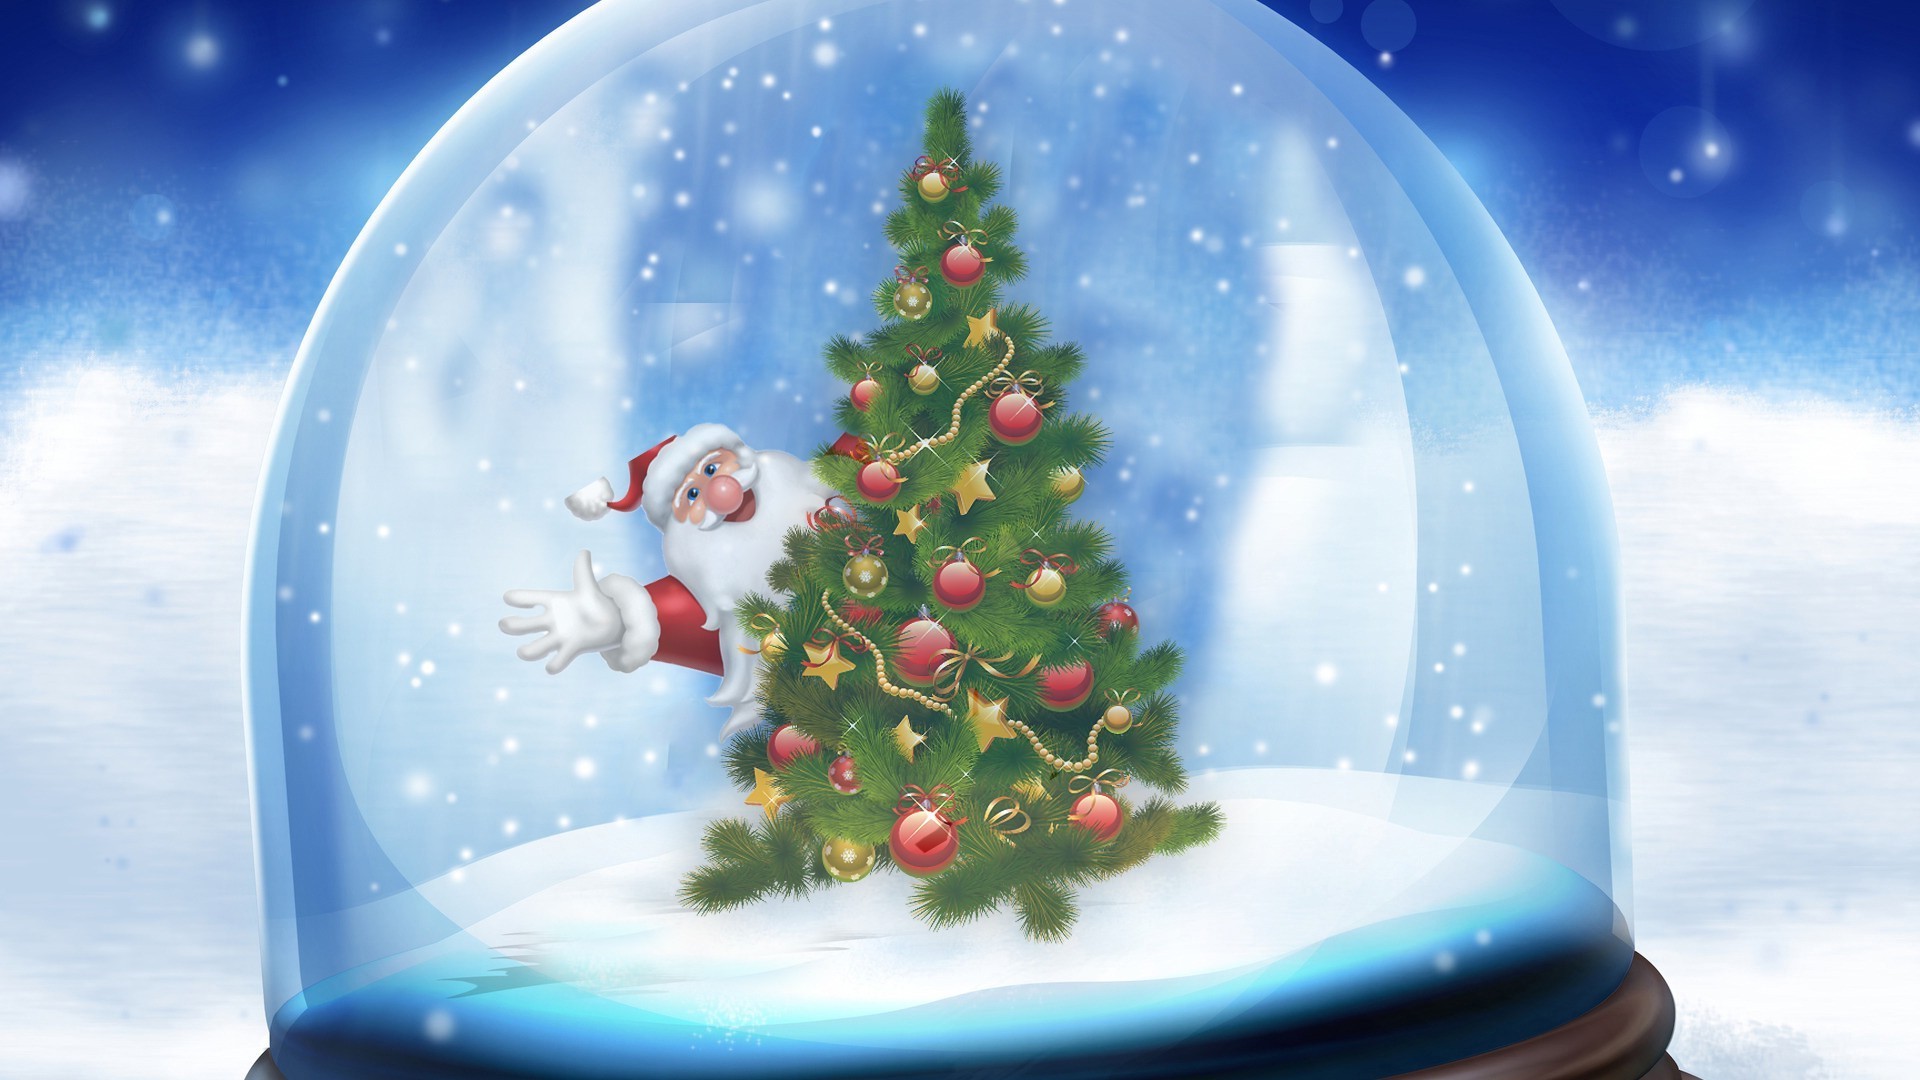 новый год рождество зима снег мерри дерево снежинка мяч украшения небо холодная сезон природа воды праздник отпуск свет сфера размытость